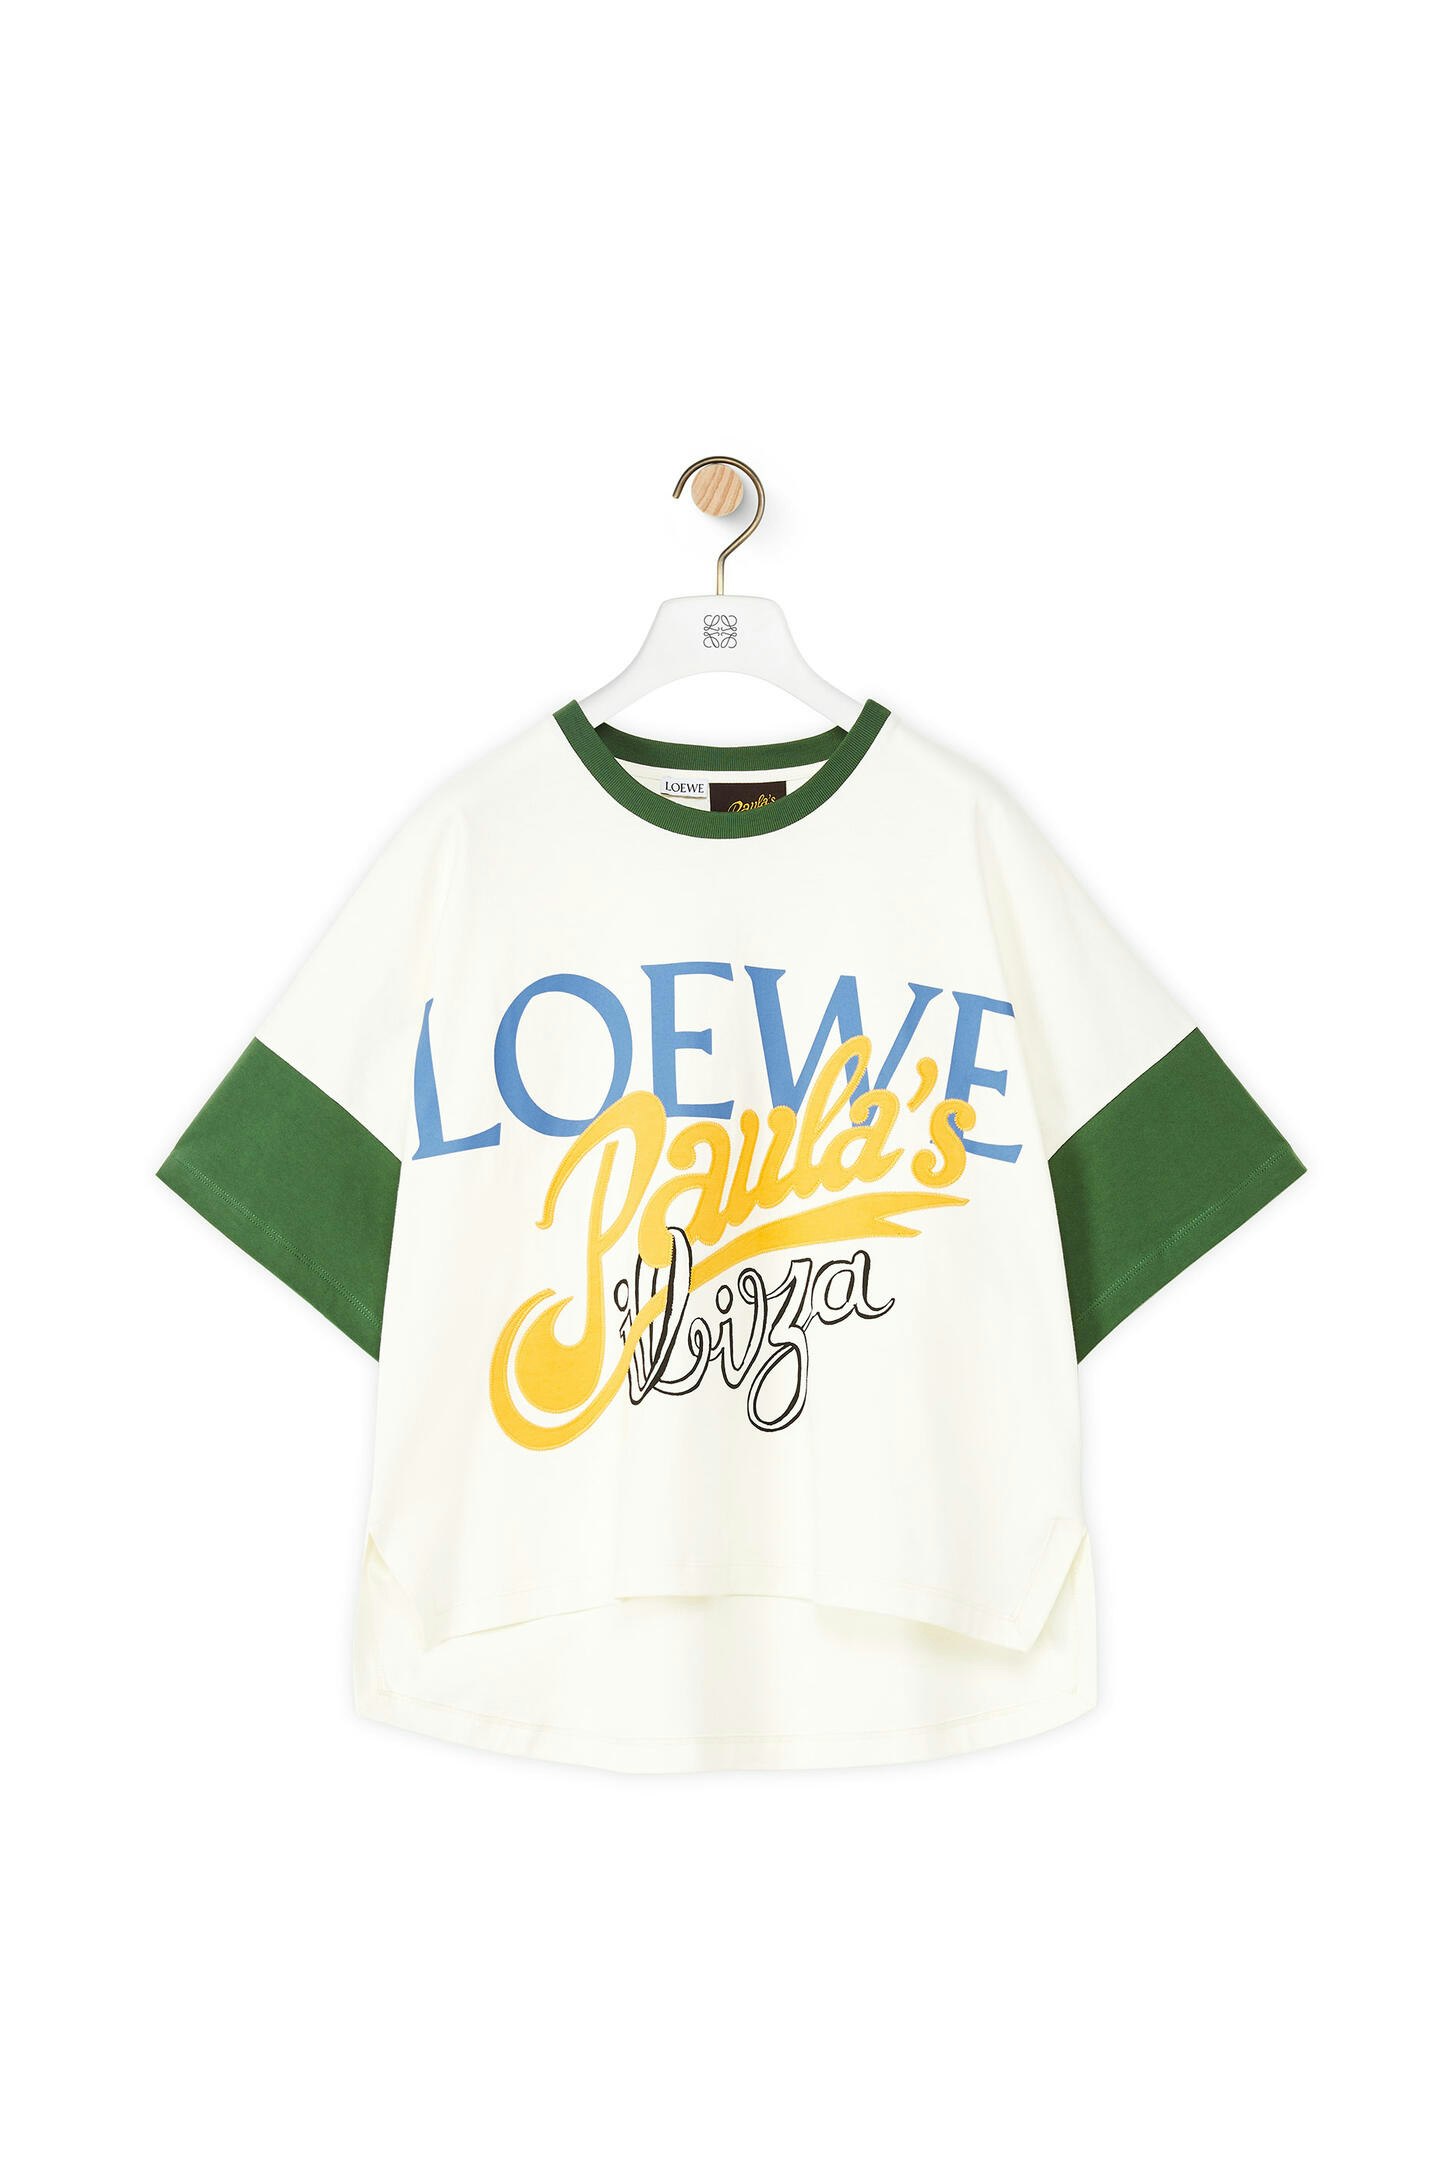 Loewe, Oversized T-Shirt, £295